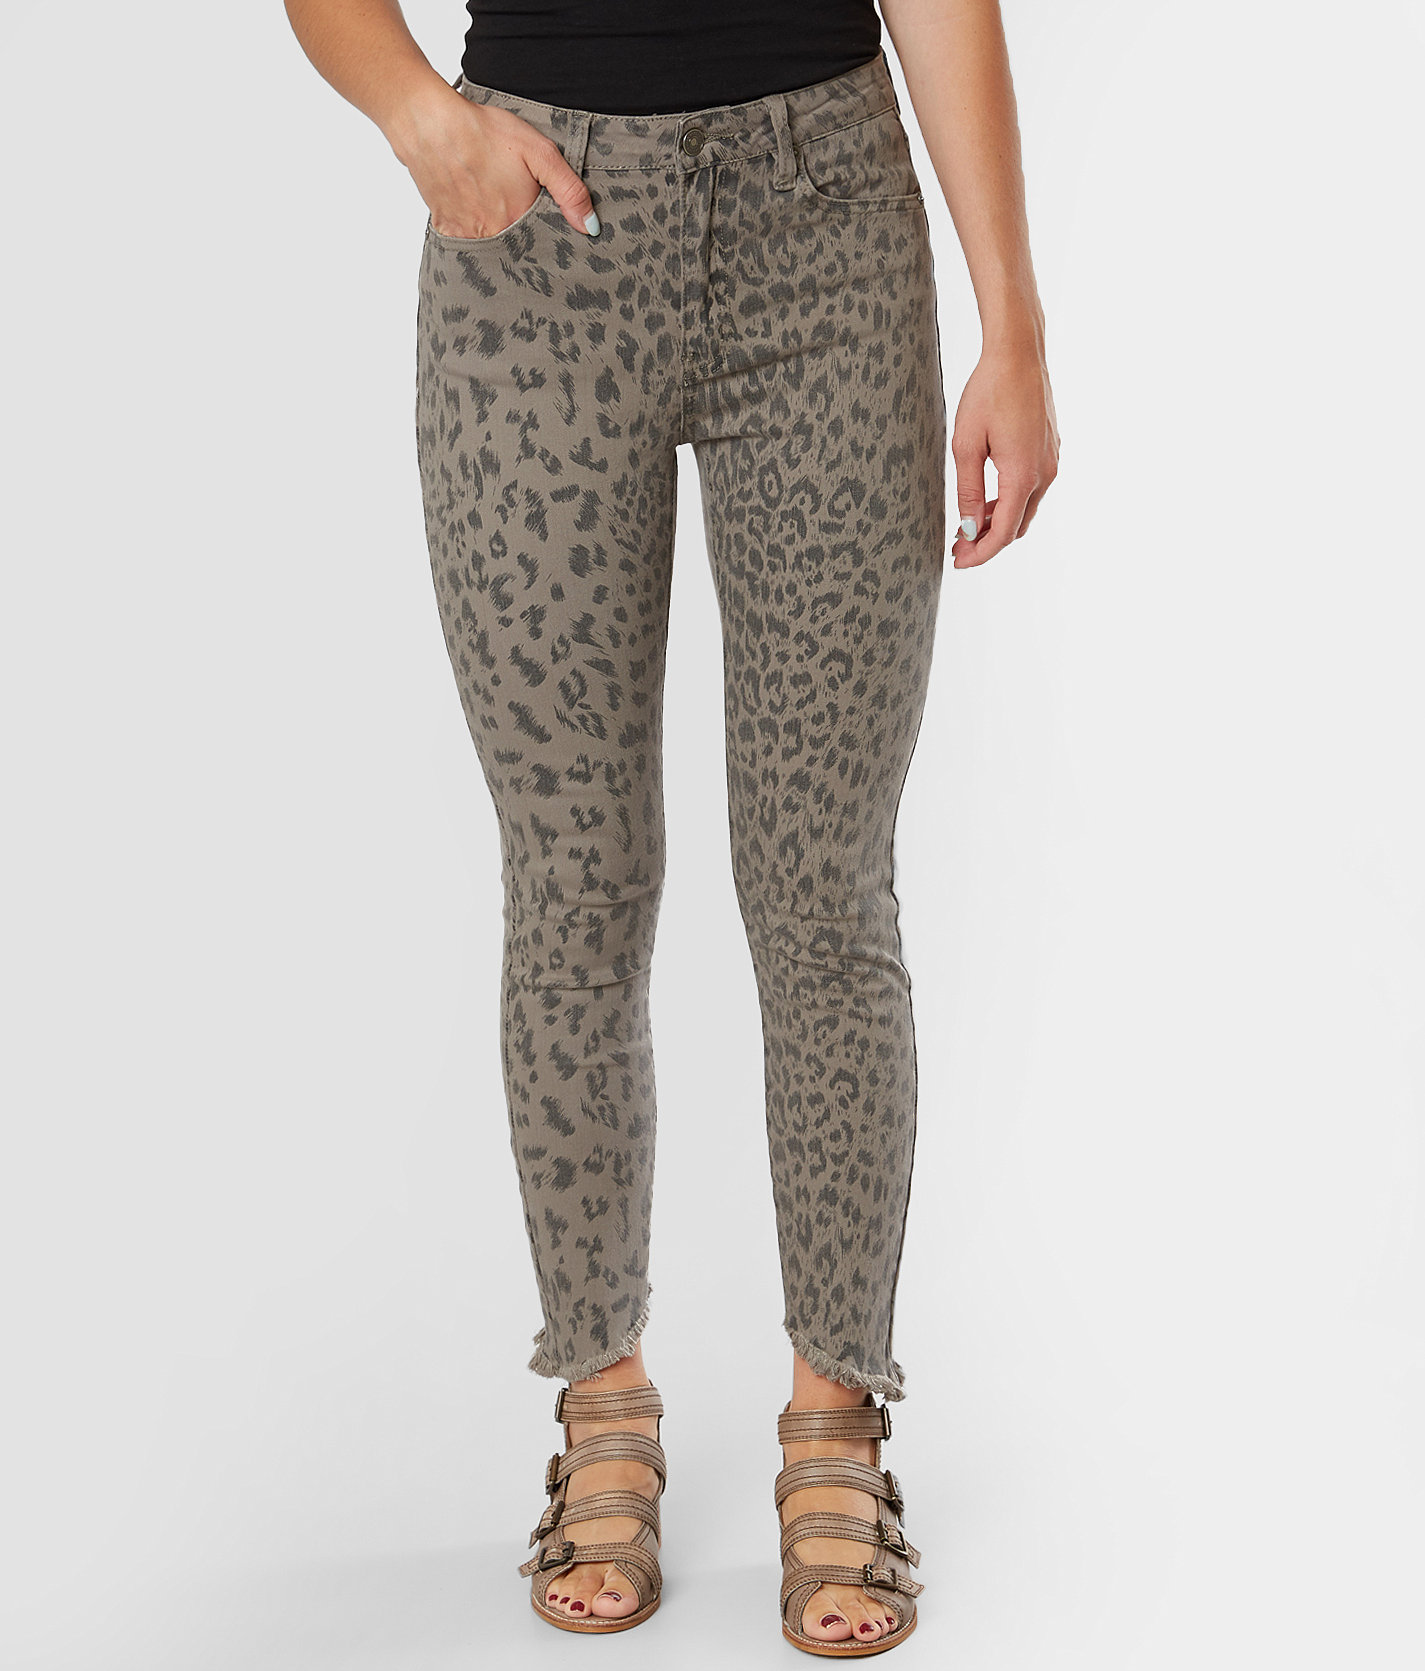 kancan jeans leopard